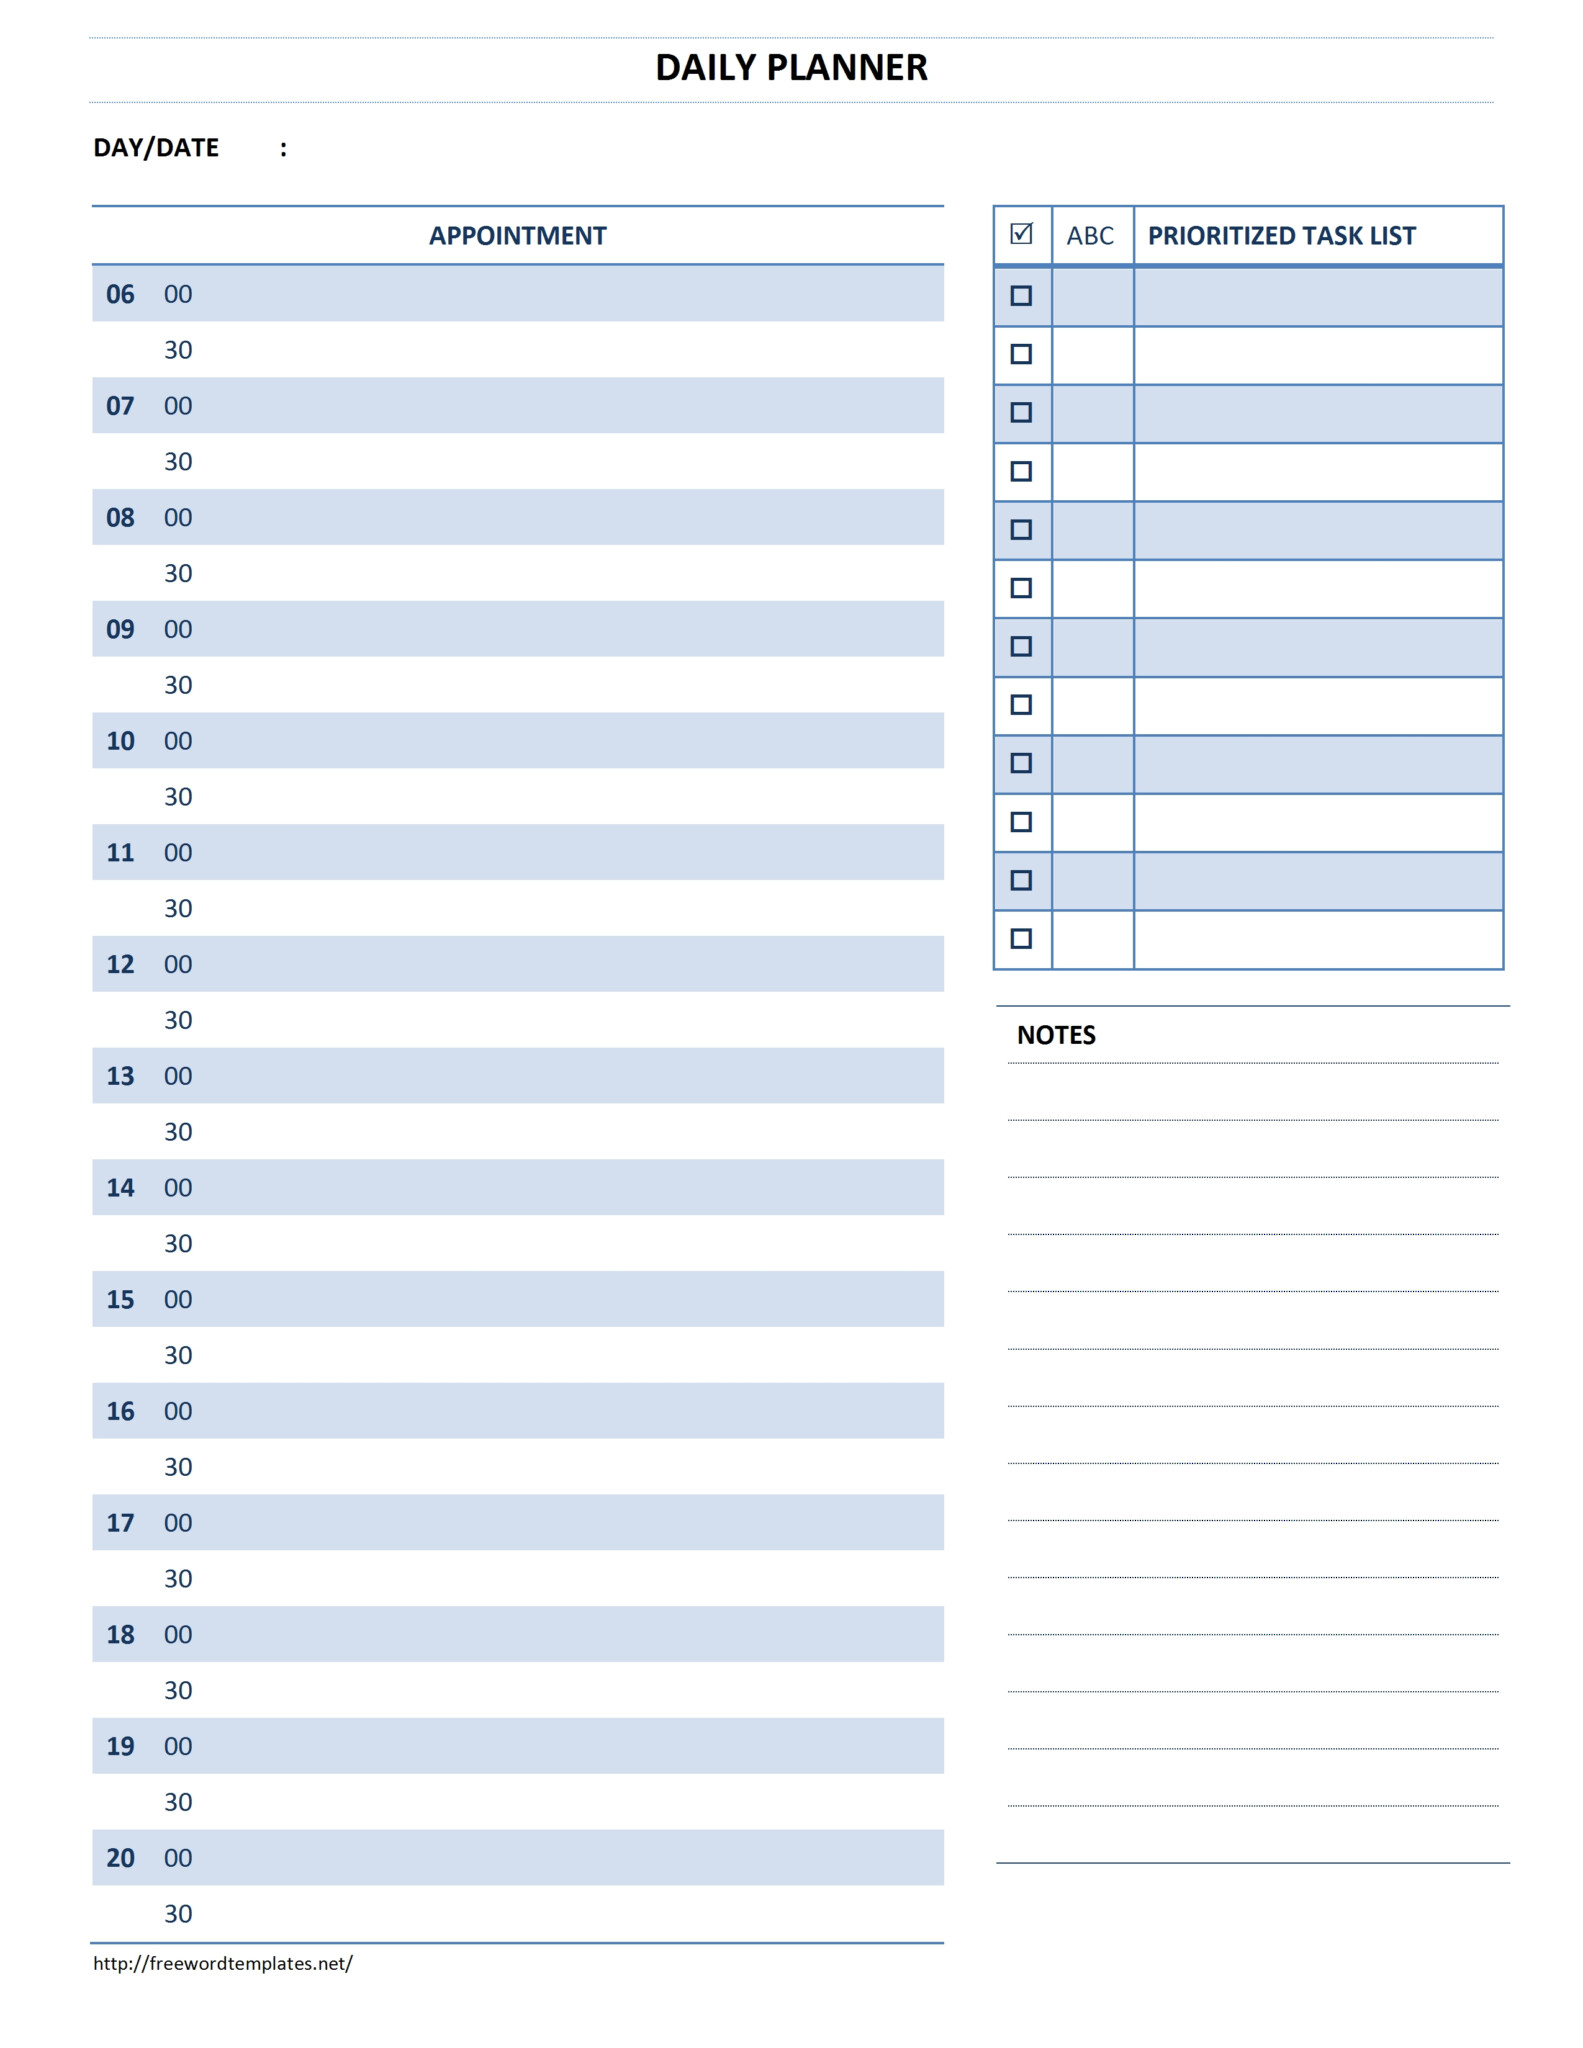 class-schedule-template-for-preschool-4-clarifications-on-class